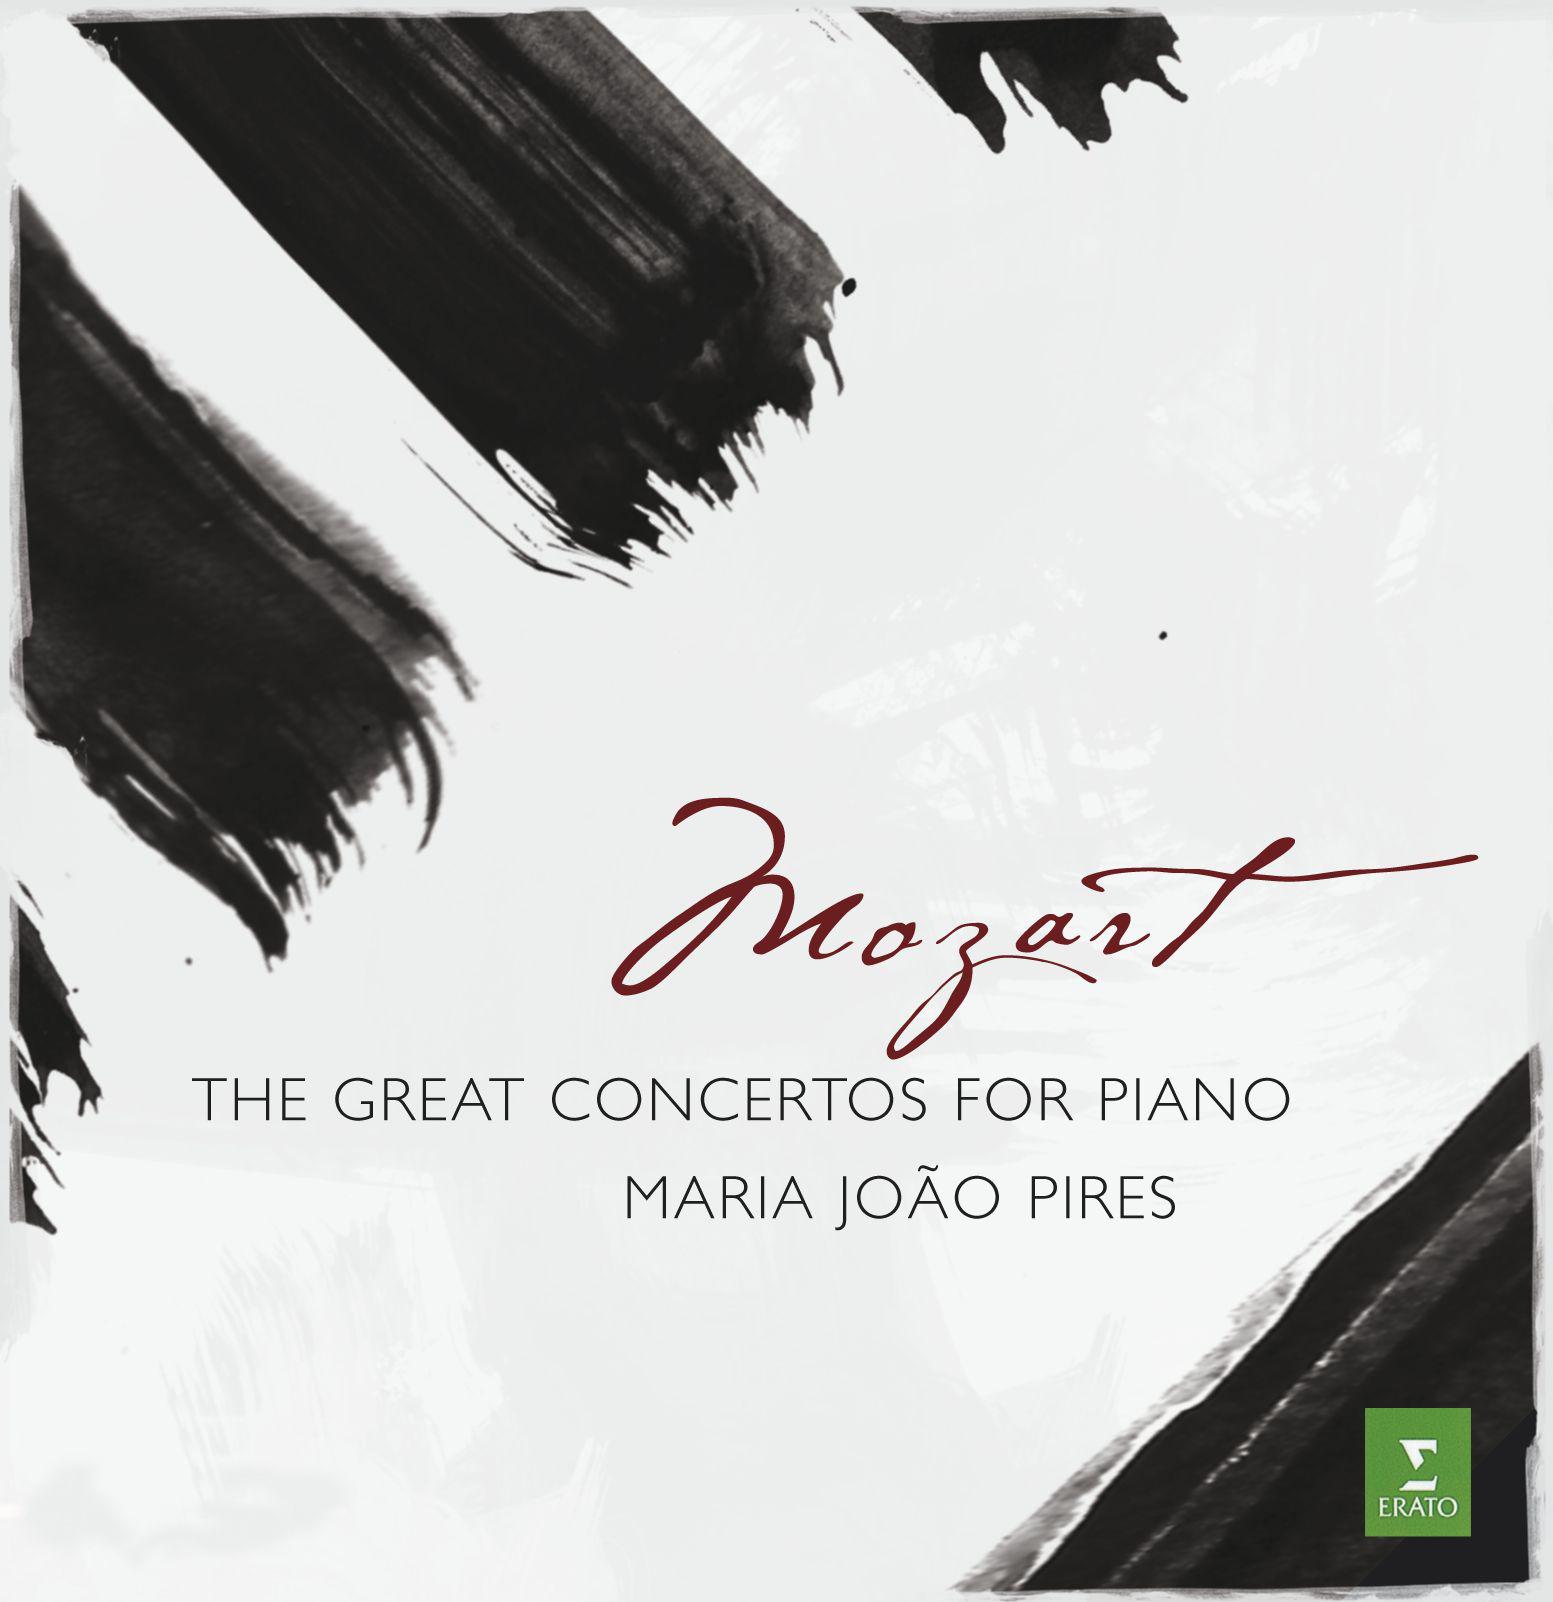 Piano Concerto No. 20 in D Minor, K. 466:II. Romance